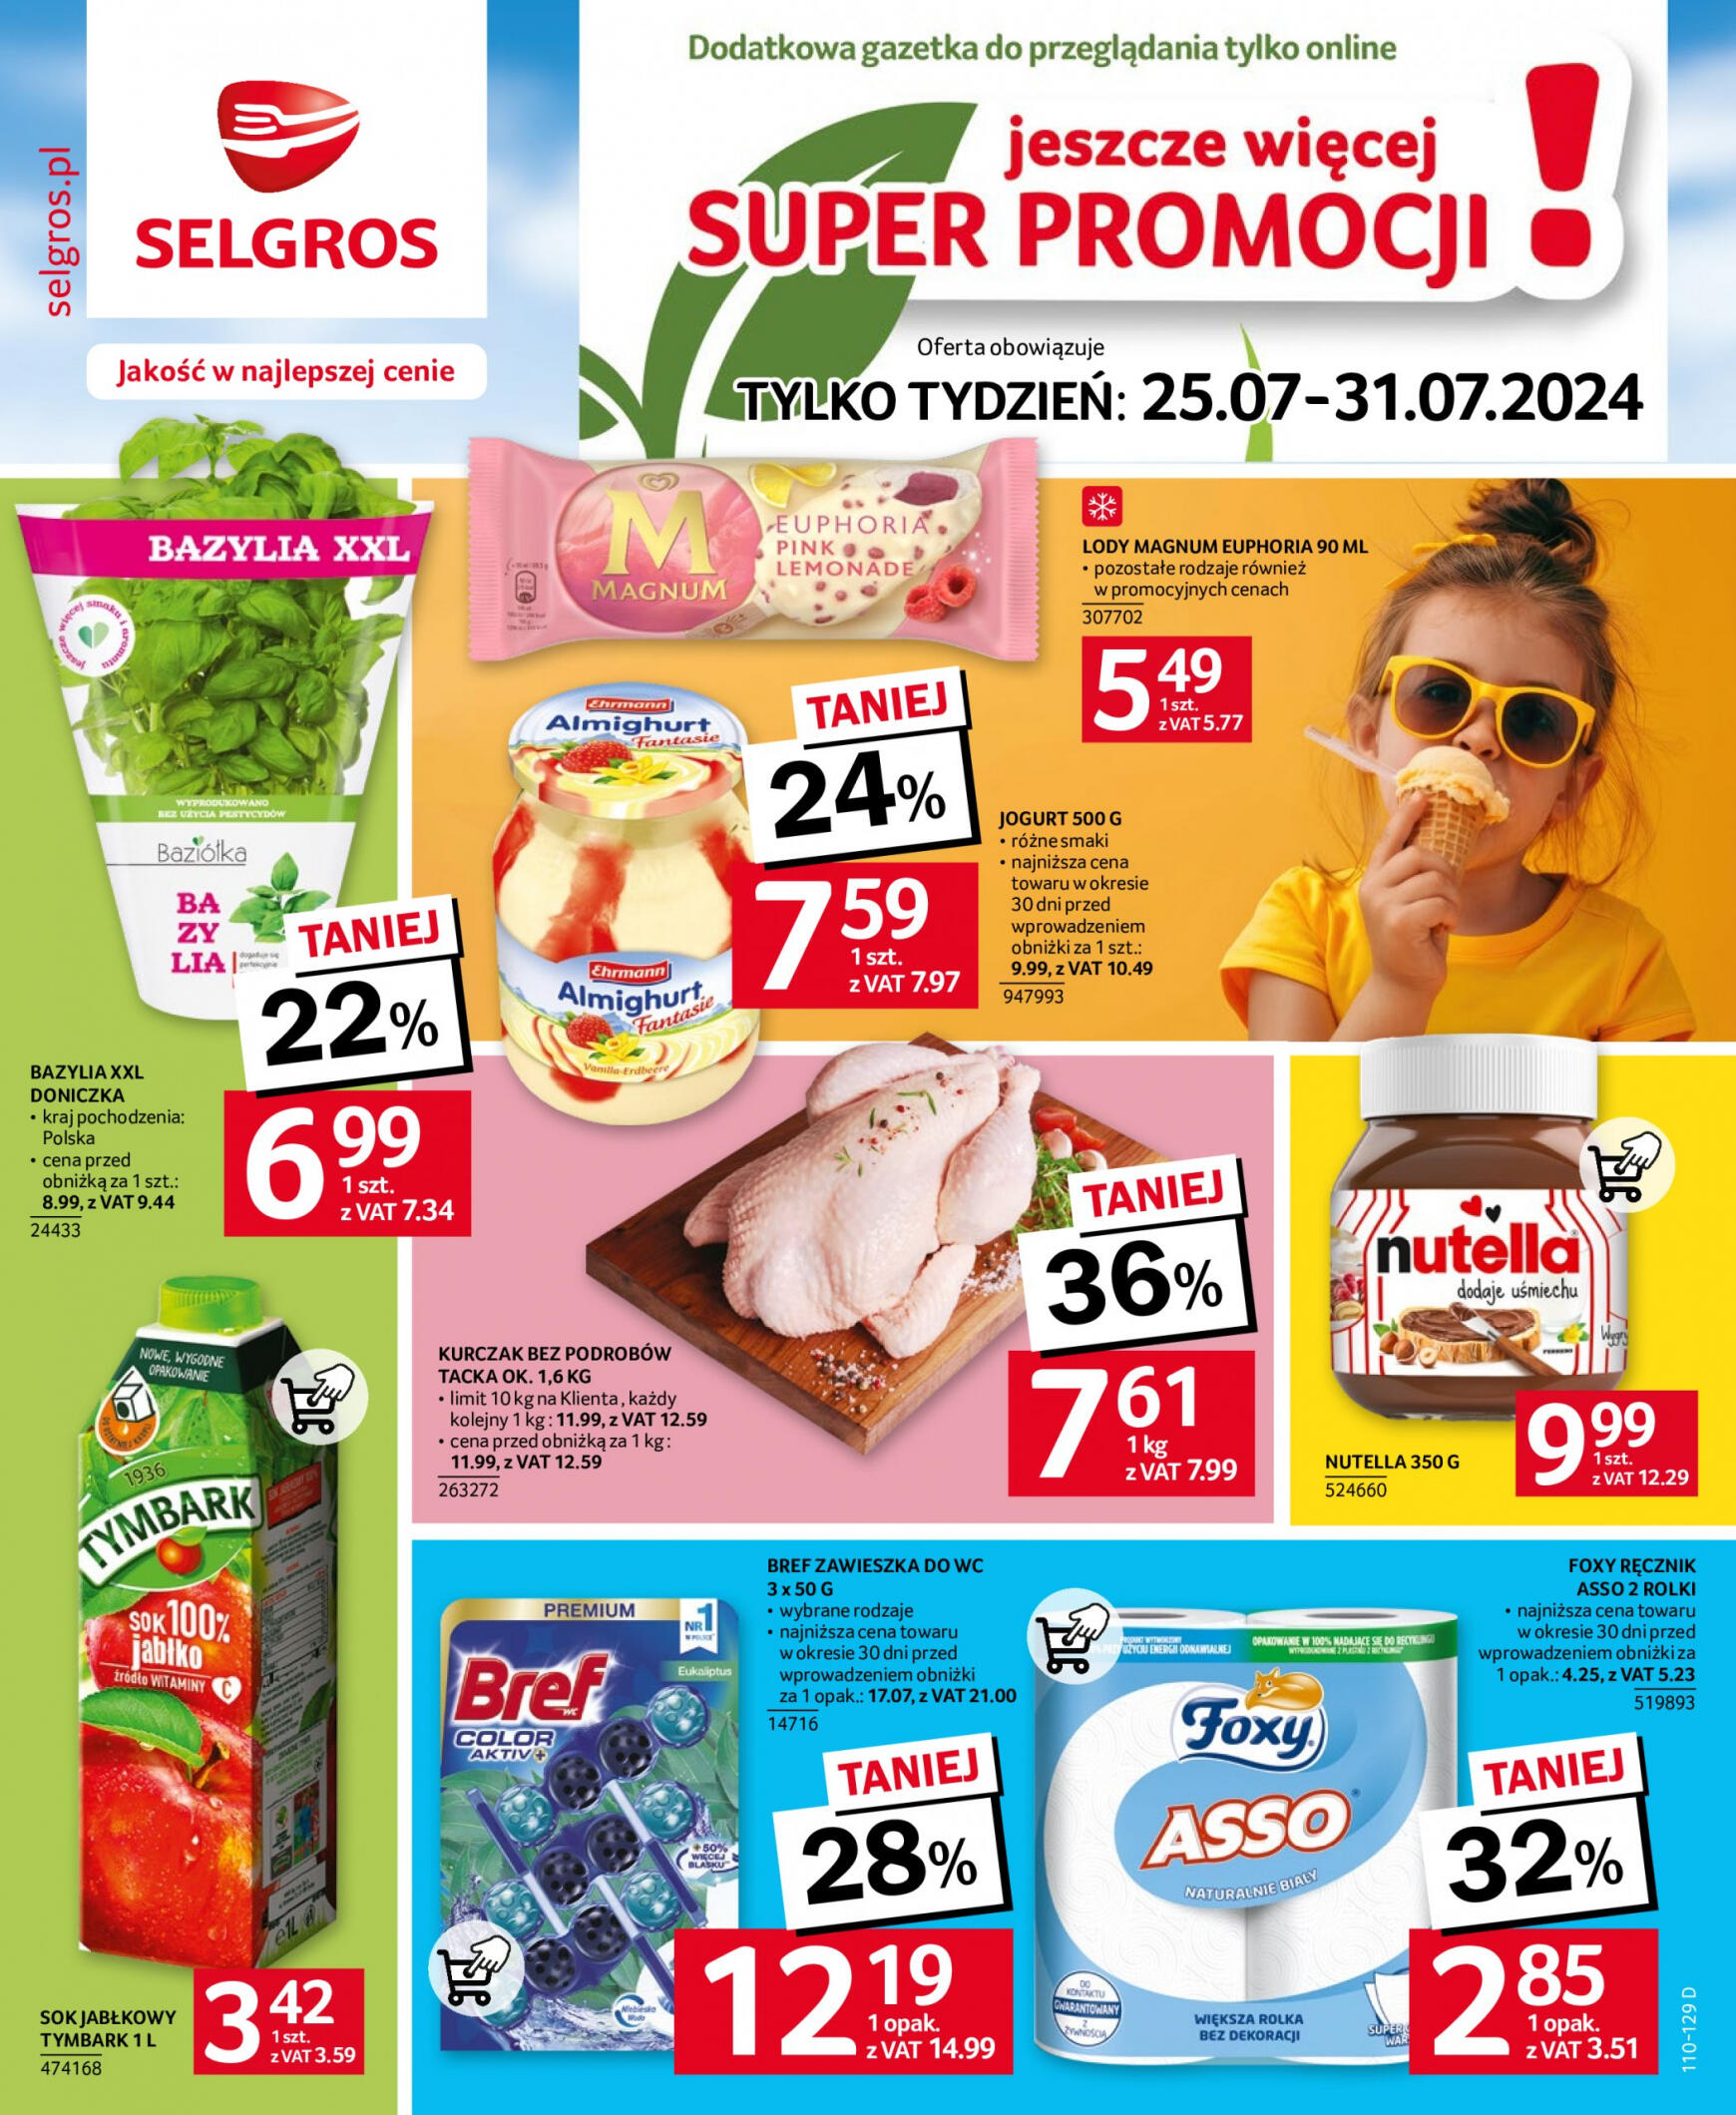 selgros - Selgros cash&carry gazetka aktualna ważna od 25.07. - 31.07.